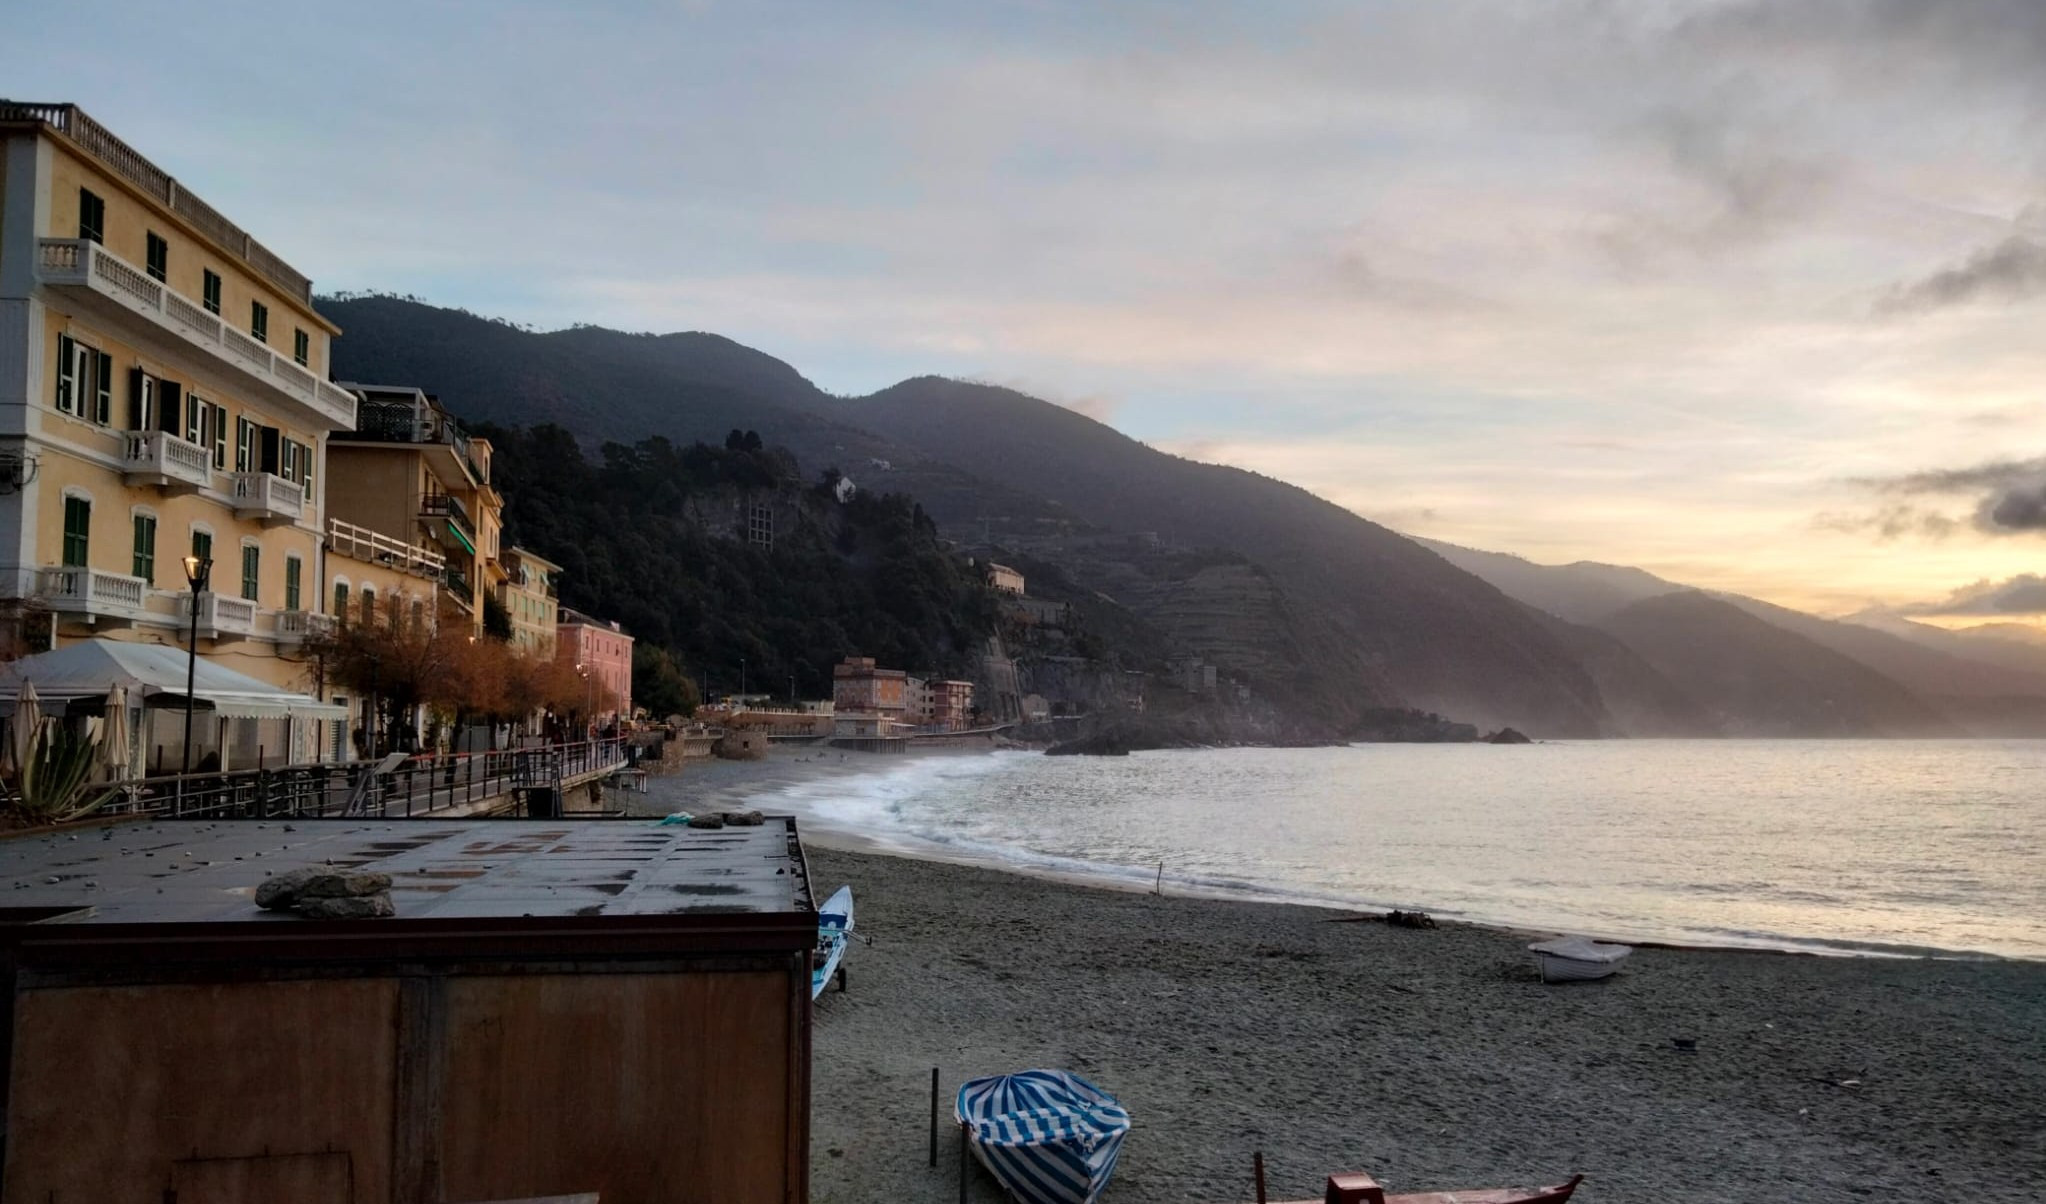 Meteo, velature in Liguria: le previsioni 